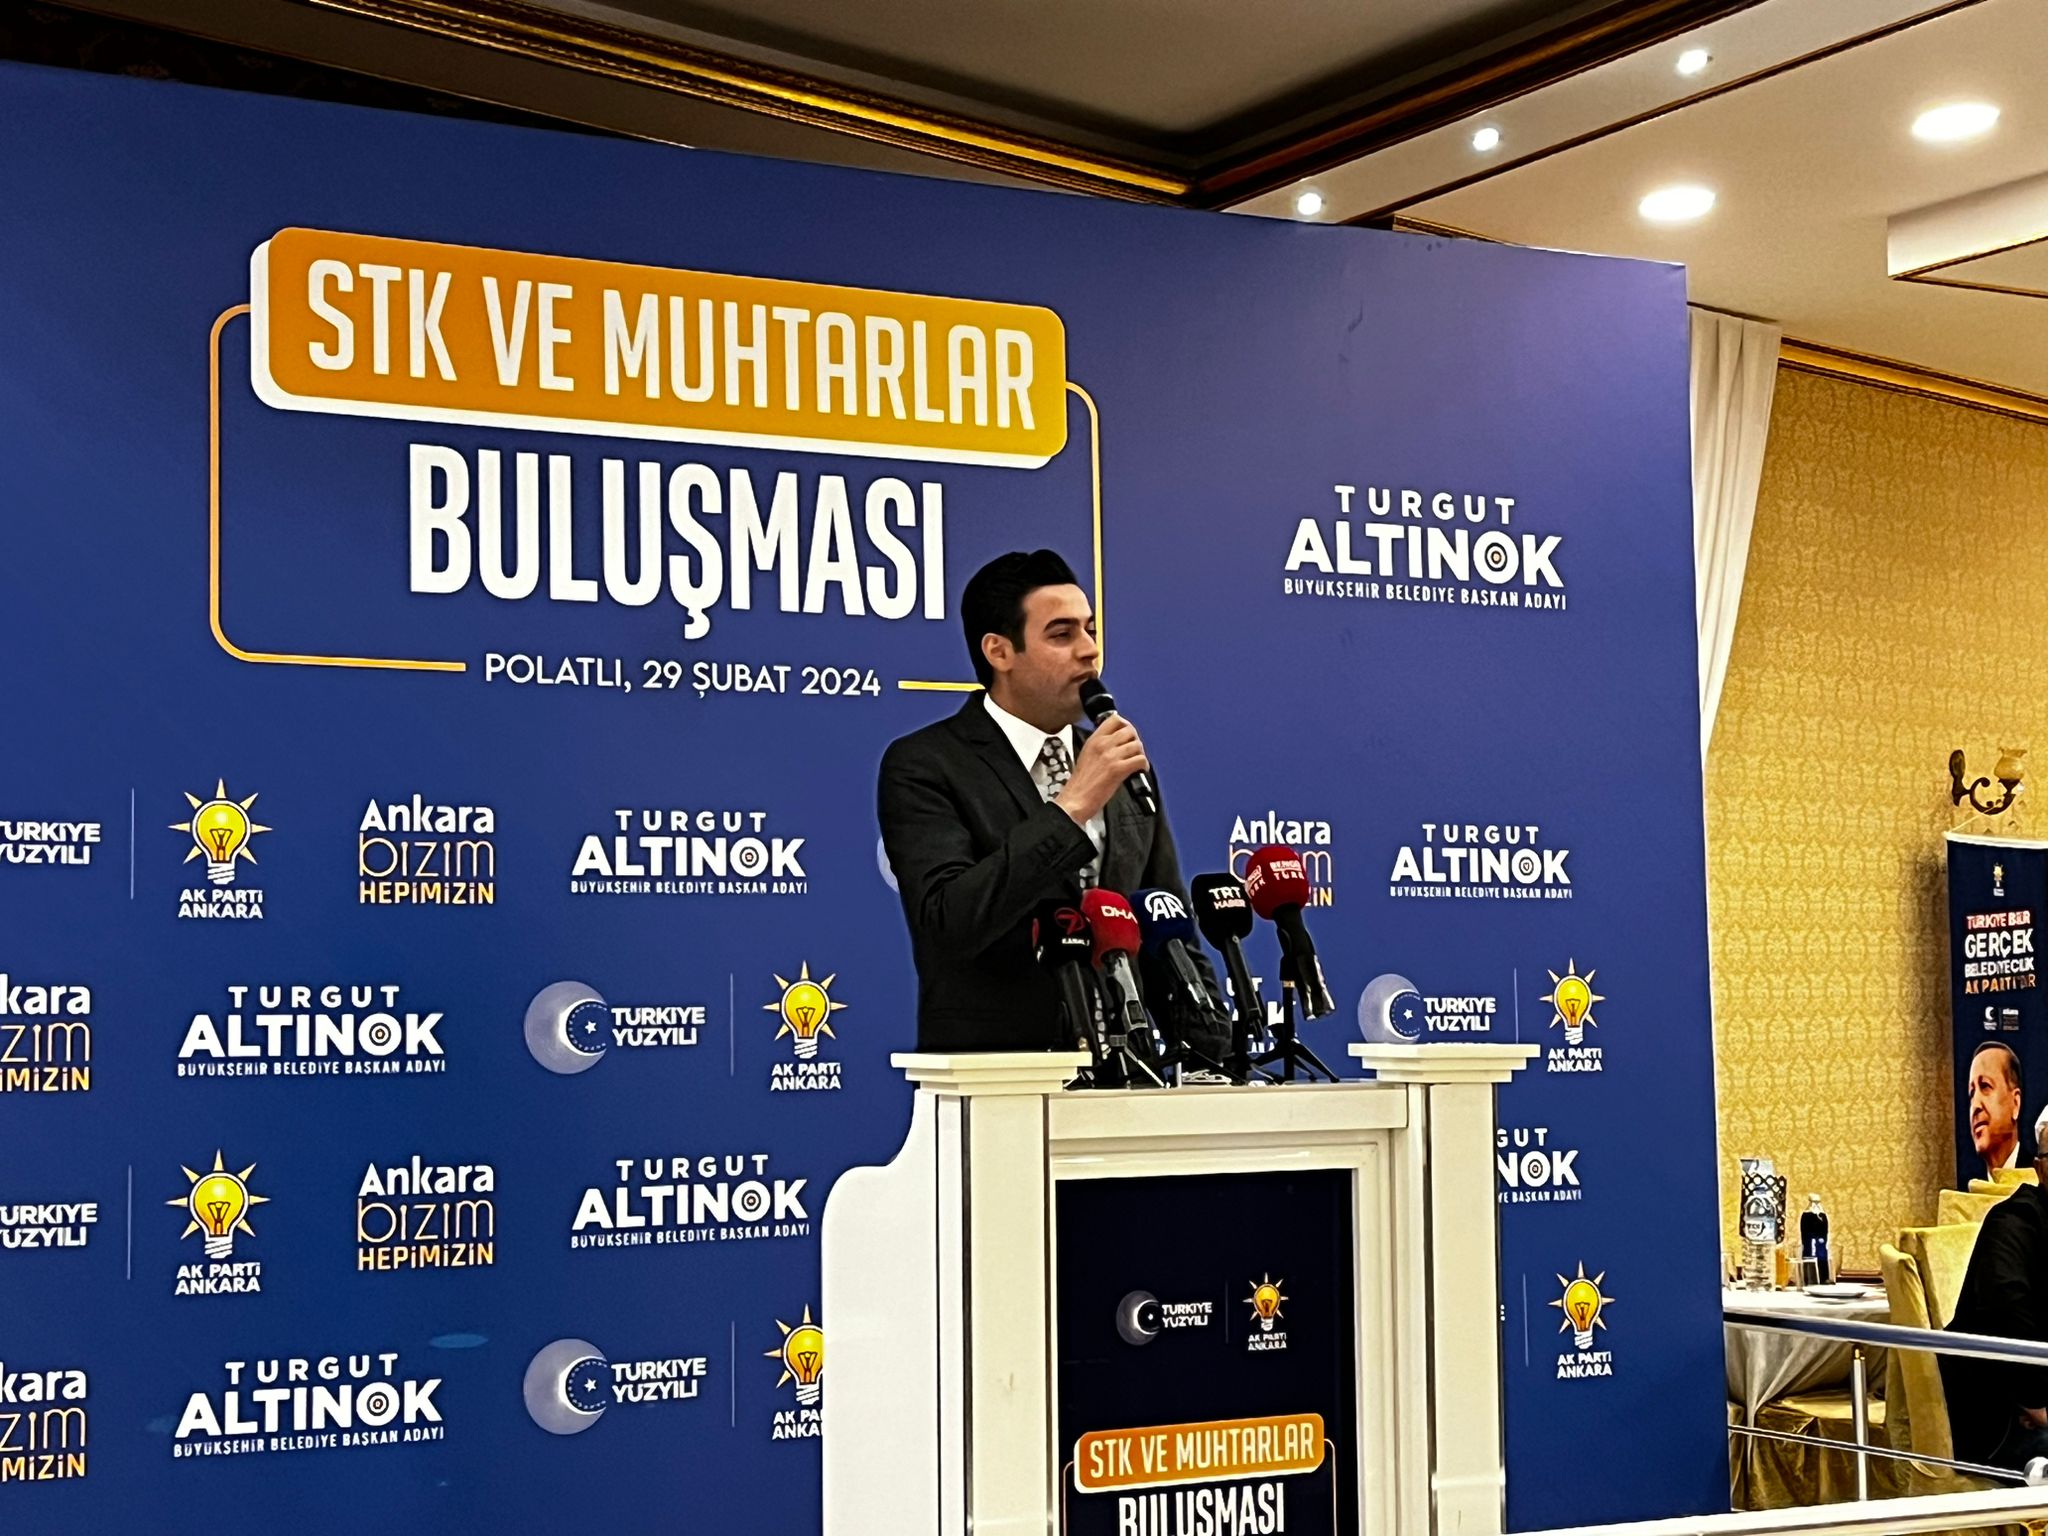 Cumhur İttifakı Ankara Büyükşehir Belediye Başkanı Altınok Polatlı'da Stk Ve Muhtarlarla Buluştu (5)